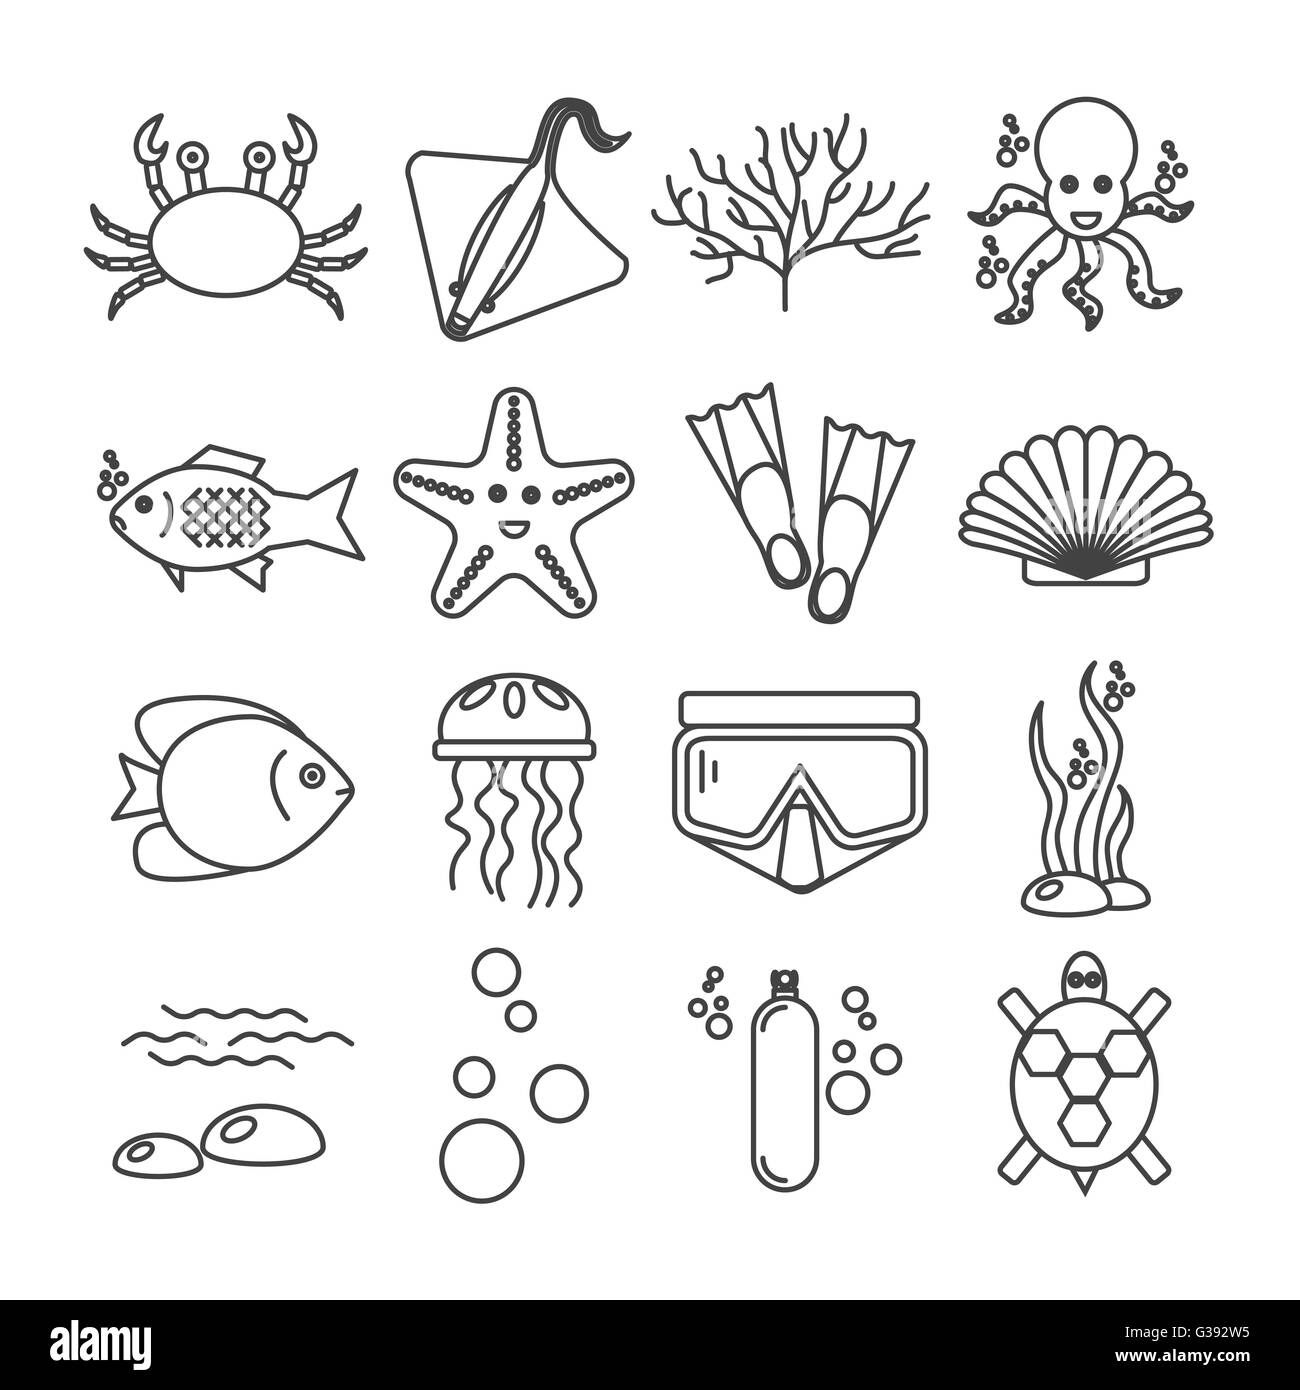 Tauchen Symbole set mit Fisch und Ausrüstung Stock Vektor